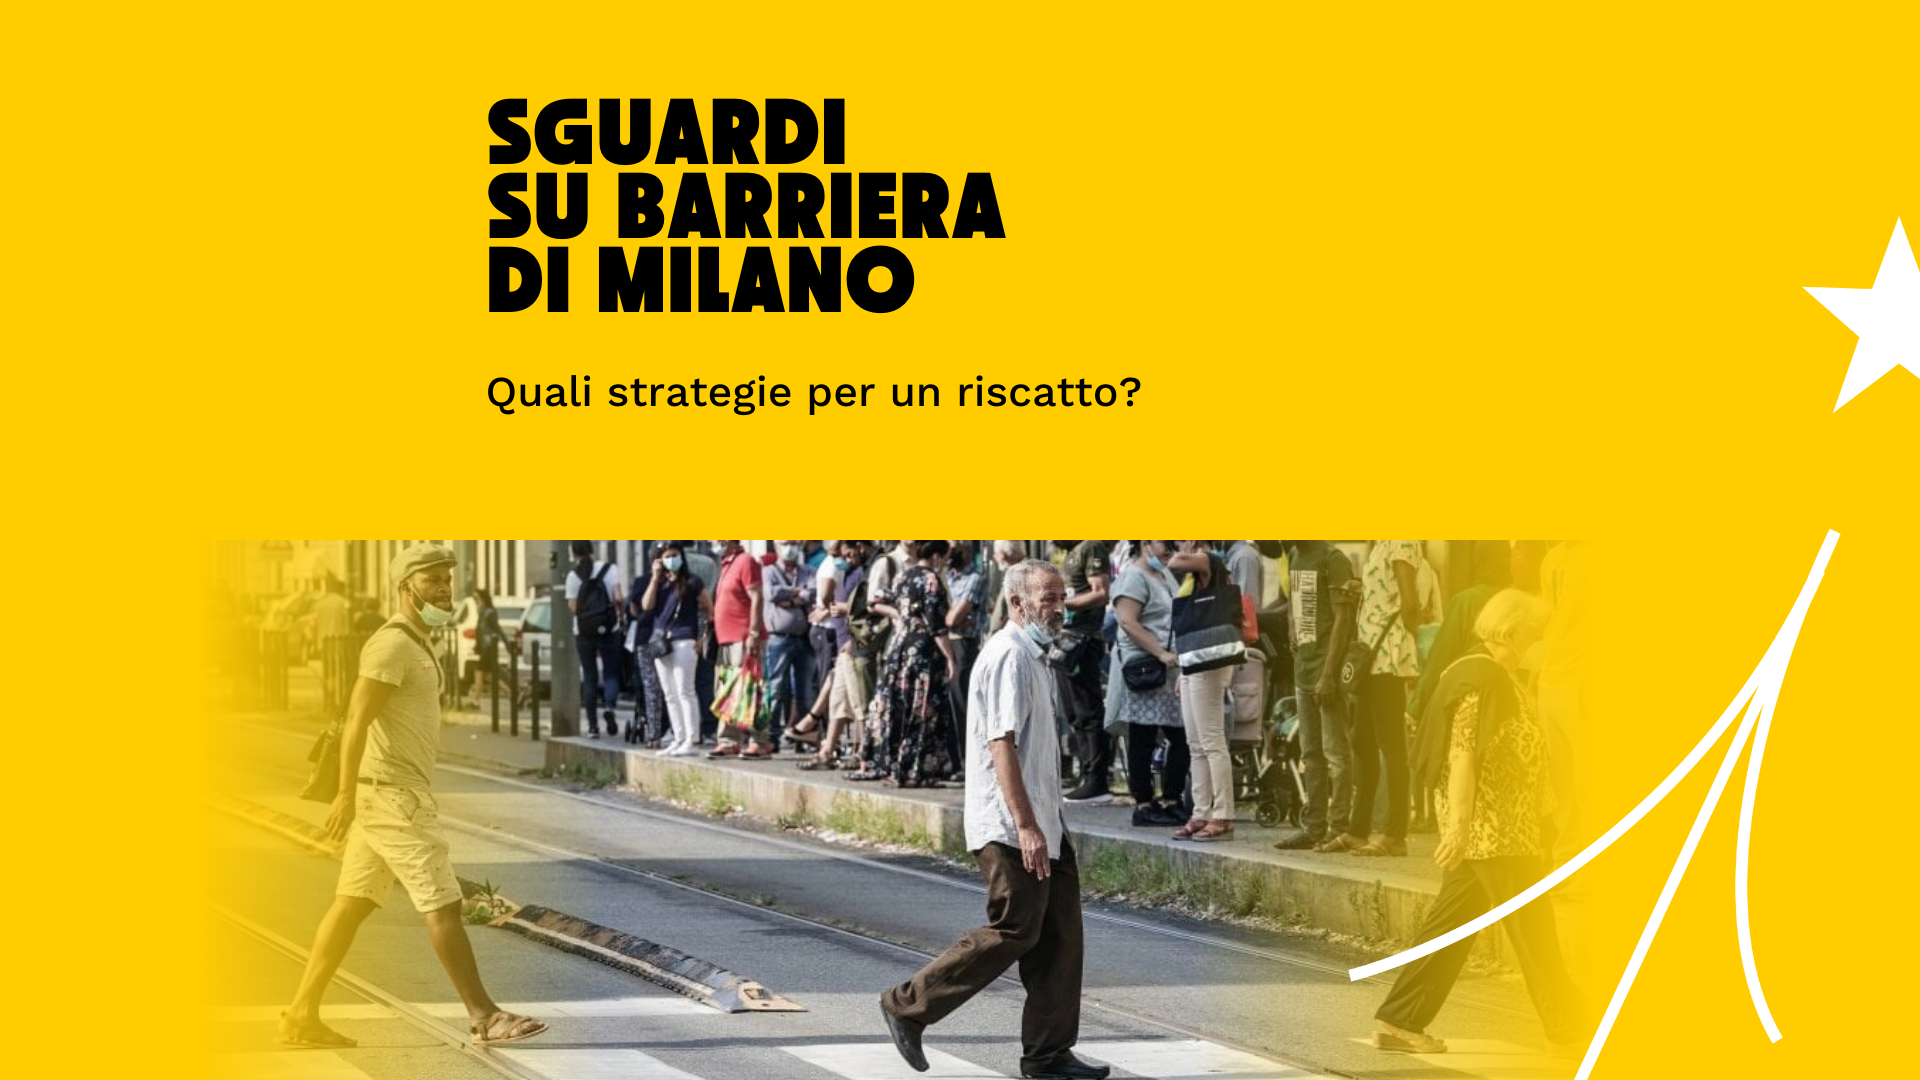 Sguardi su Barriera di Milano: quali strategie per un riscatto?